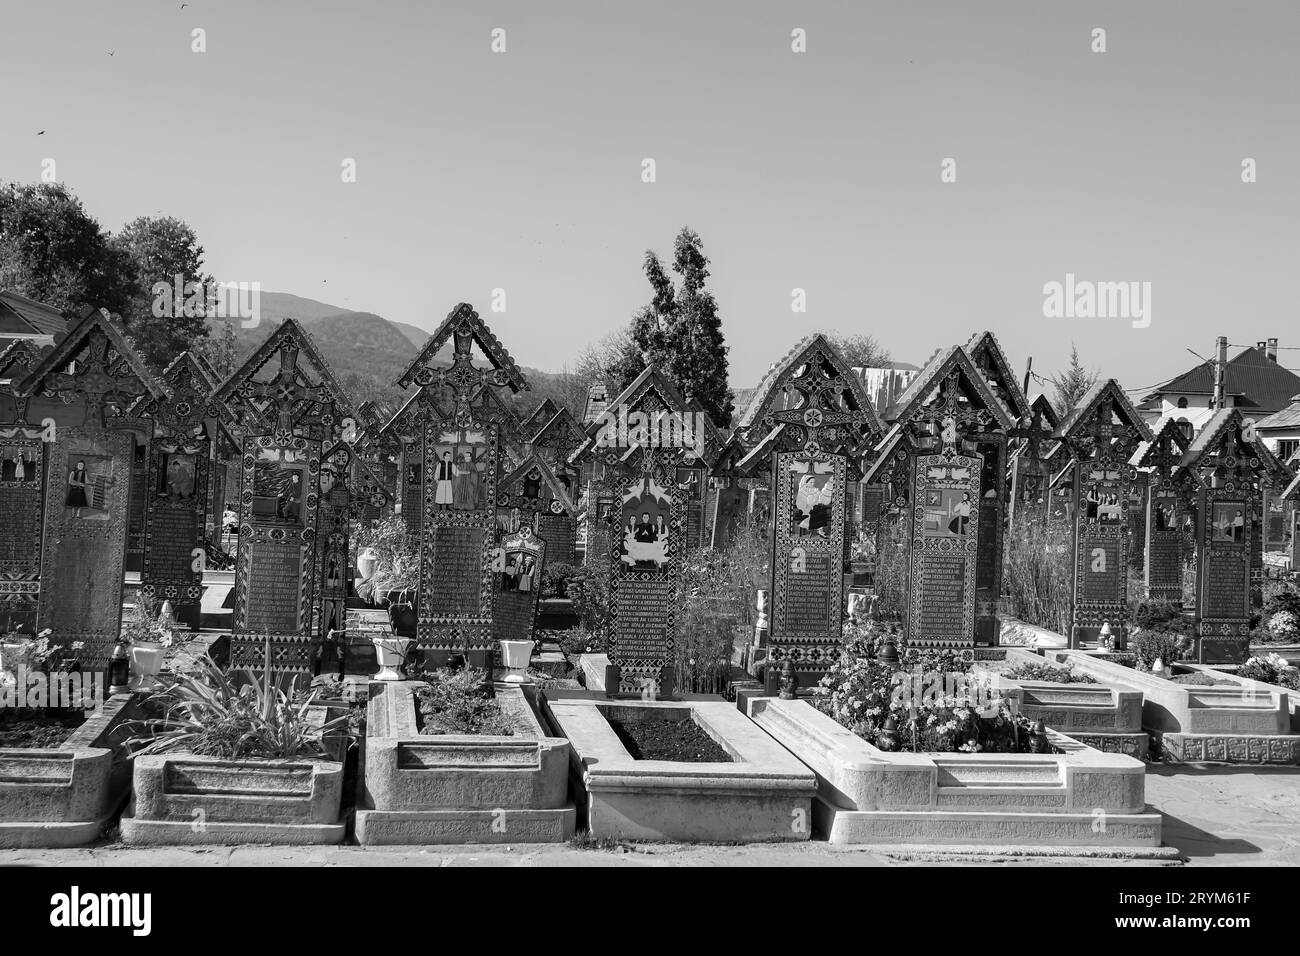 Cimitero delle lapidi bianche e nere del Merry Cemetery, con pitture colorate e ingenue che descrivono le persone sepolte. Una delle sette meraviglie della Romania Foto Stock